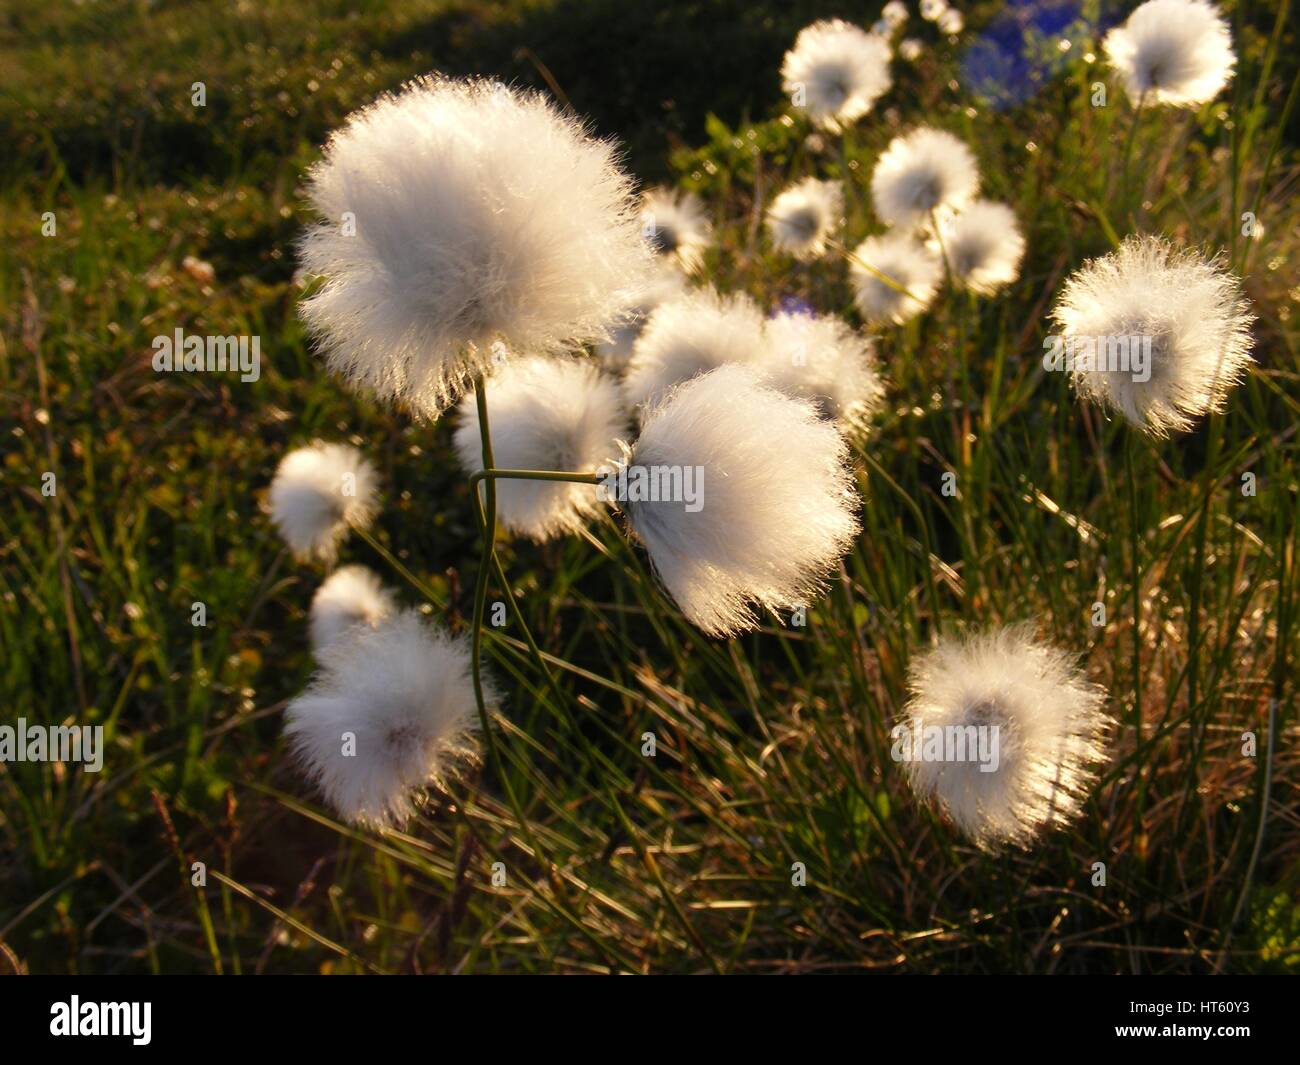 Avec le coton de l'homonyme gonflée de coton comme des fleurs à l'extrémité de la tige dans le pont terrestre de Bering National Preserve, Alaska. Banque D'Images